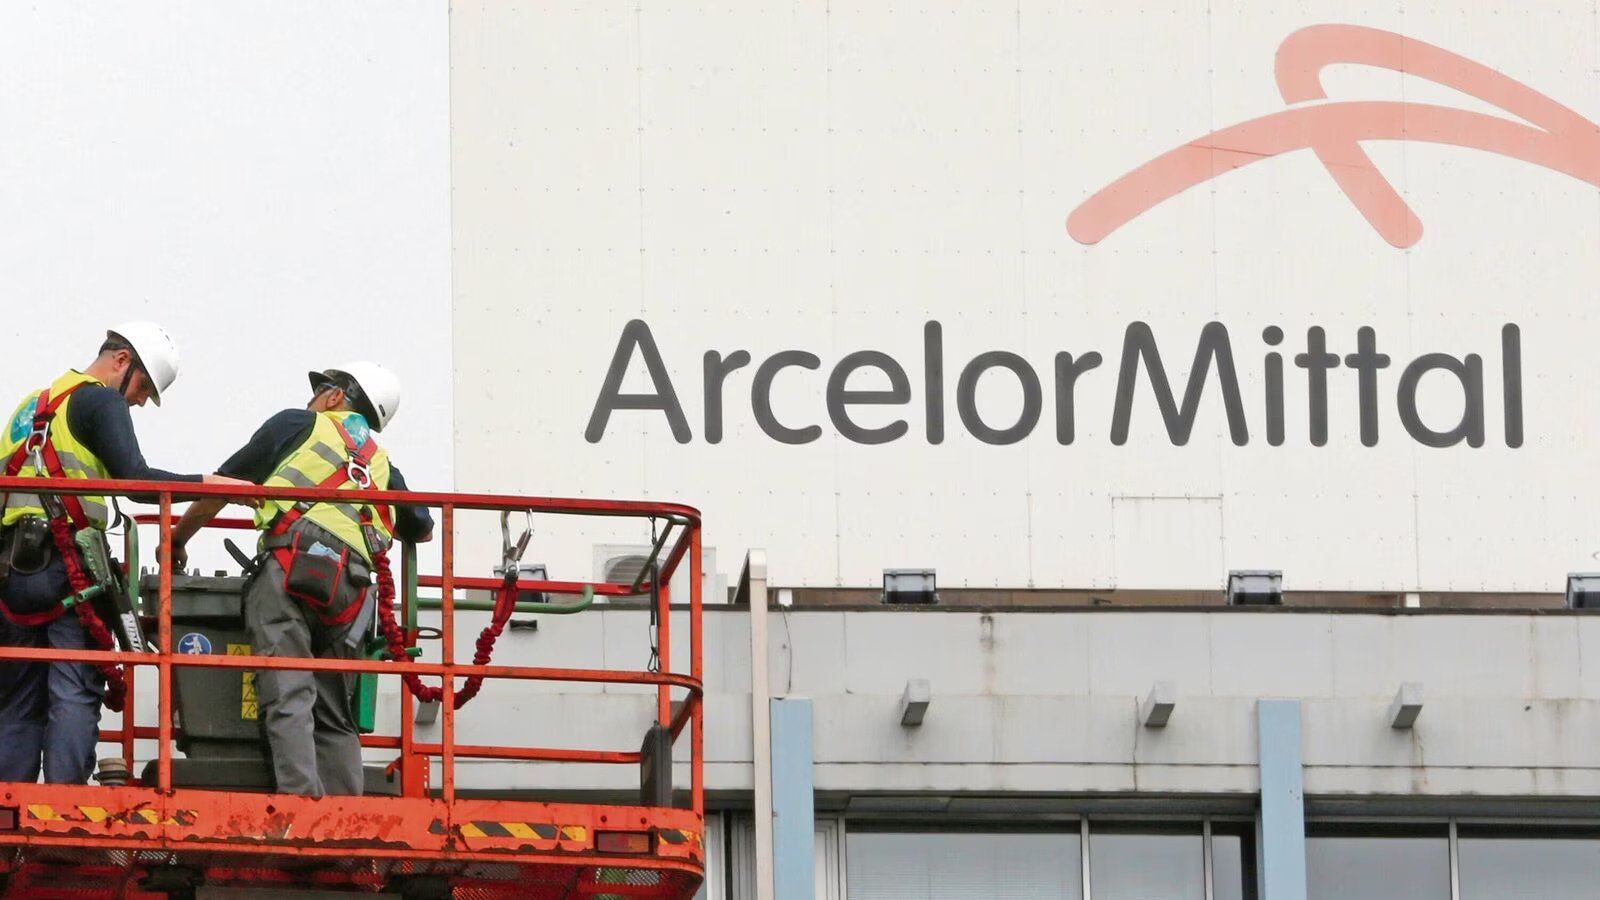 ArcelorMittal Avrupa'da uzun vadeli fiyat tekliflerini artırmayı hedefliyor